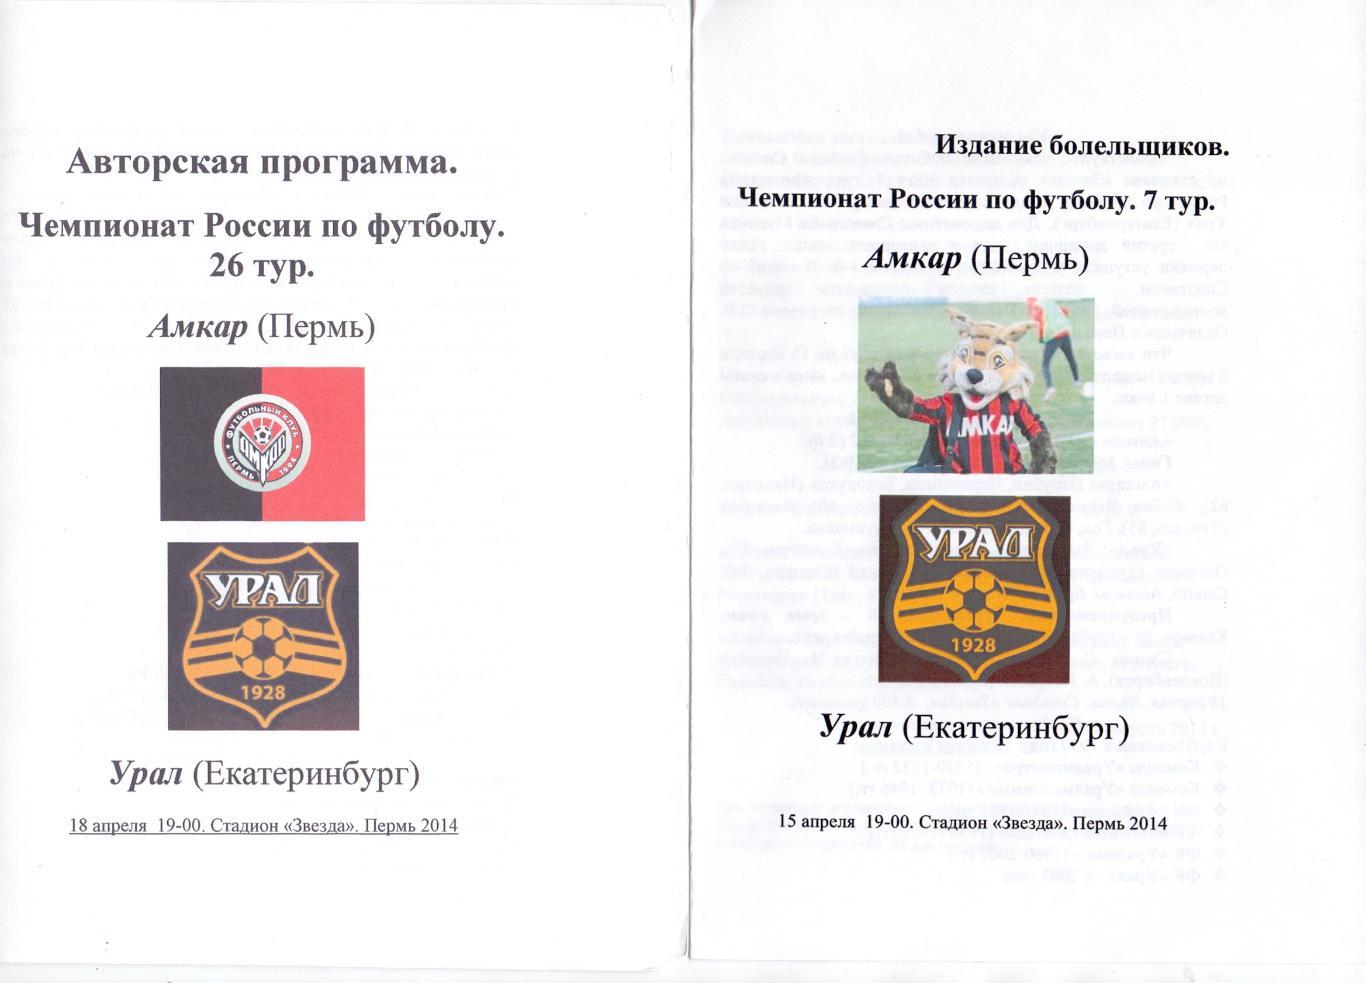 ФК Амкар Пермь - ФК Урал Екатеринбург 2014-15, авторская, справа